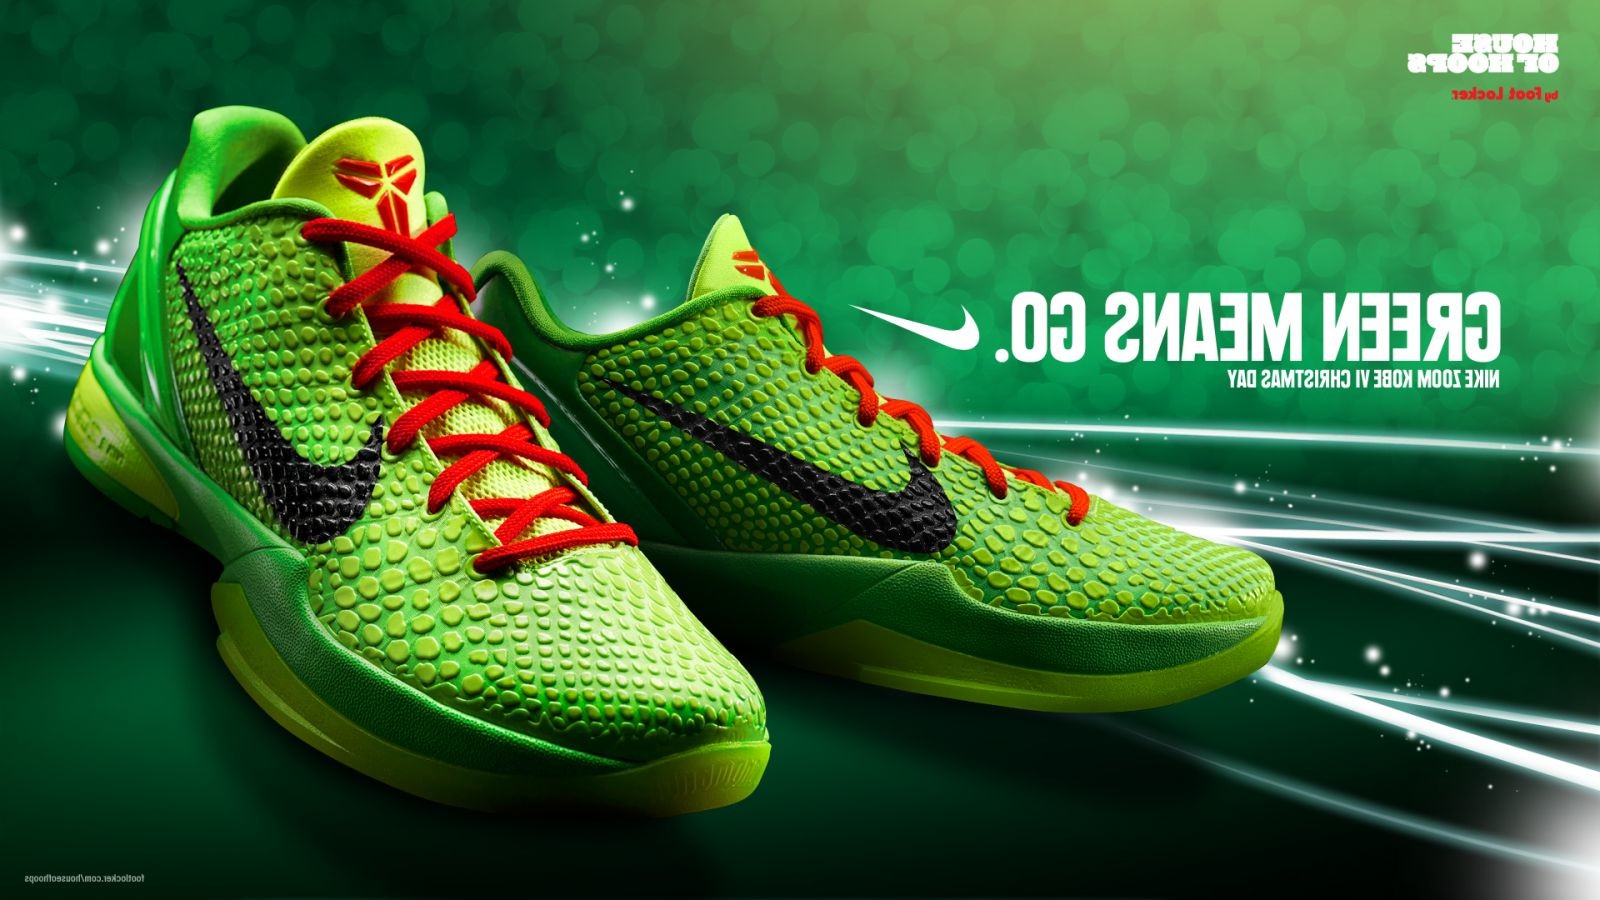 basketball shoes wallpaper,footwear,green,shoe,nike free,sneakers